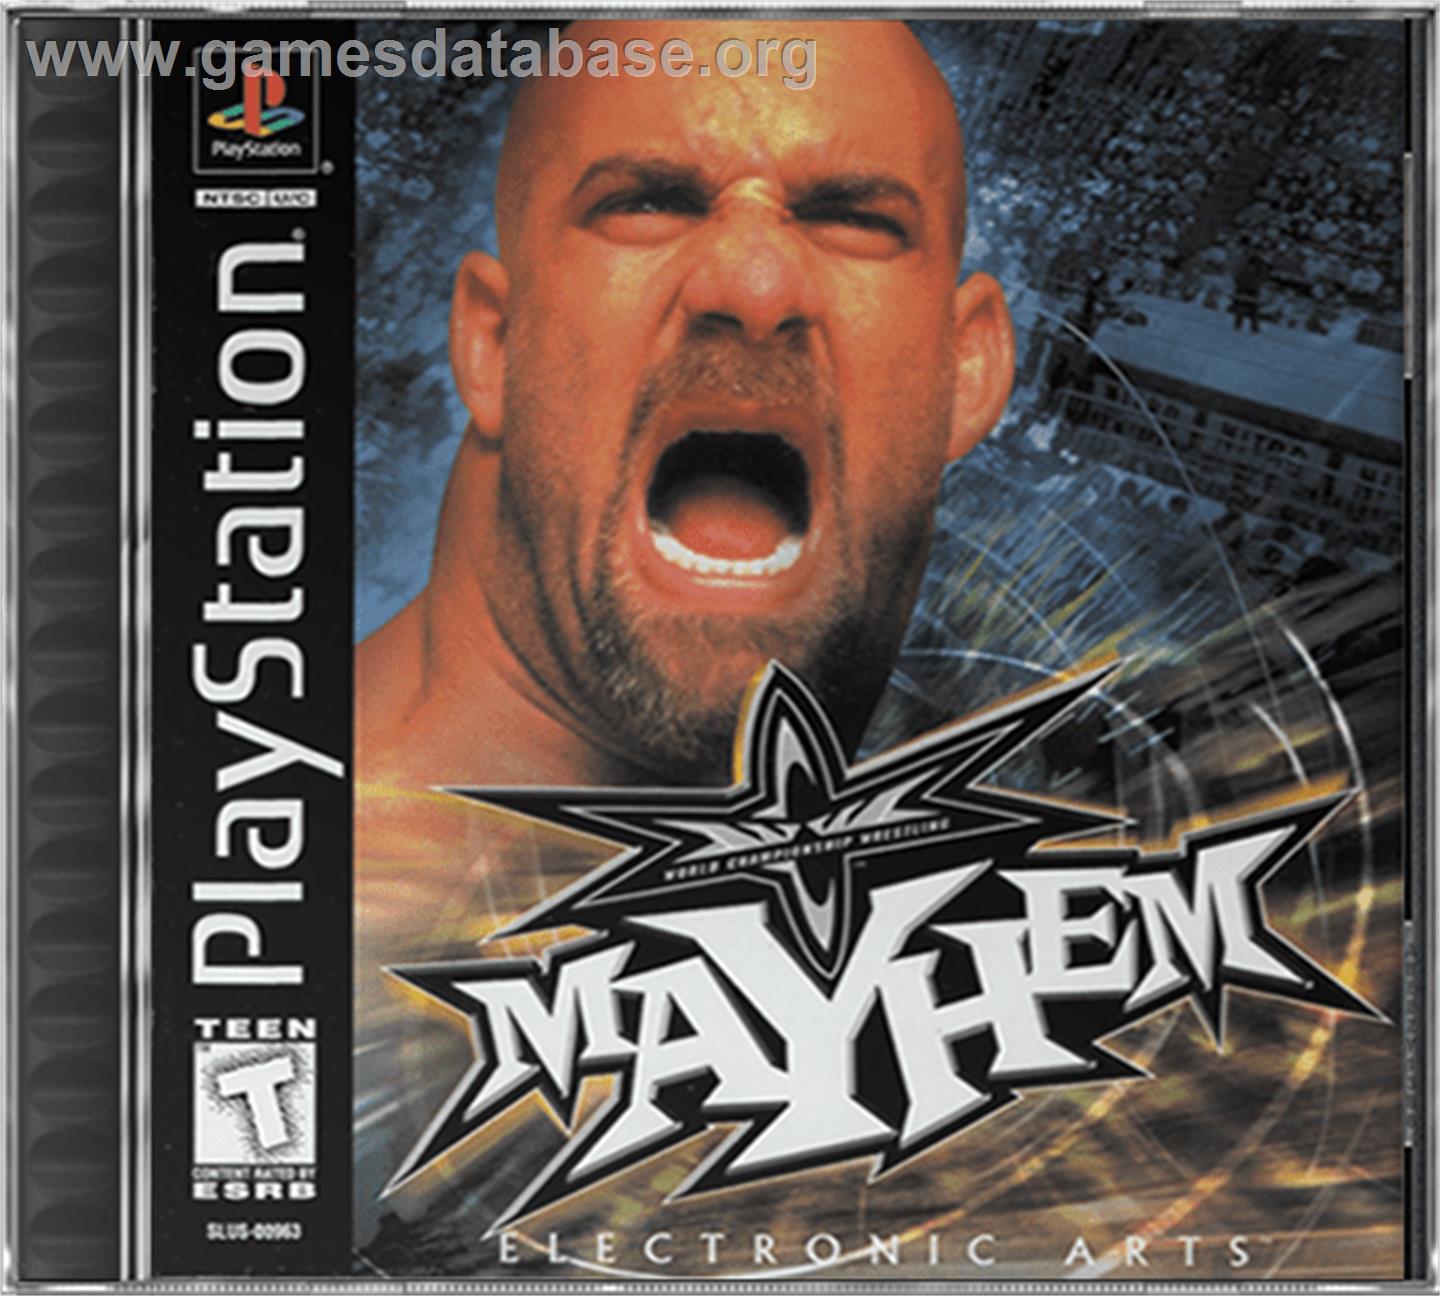 WCW Mayhem - Sony Playstation - Artwork - Box